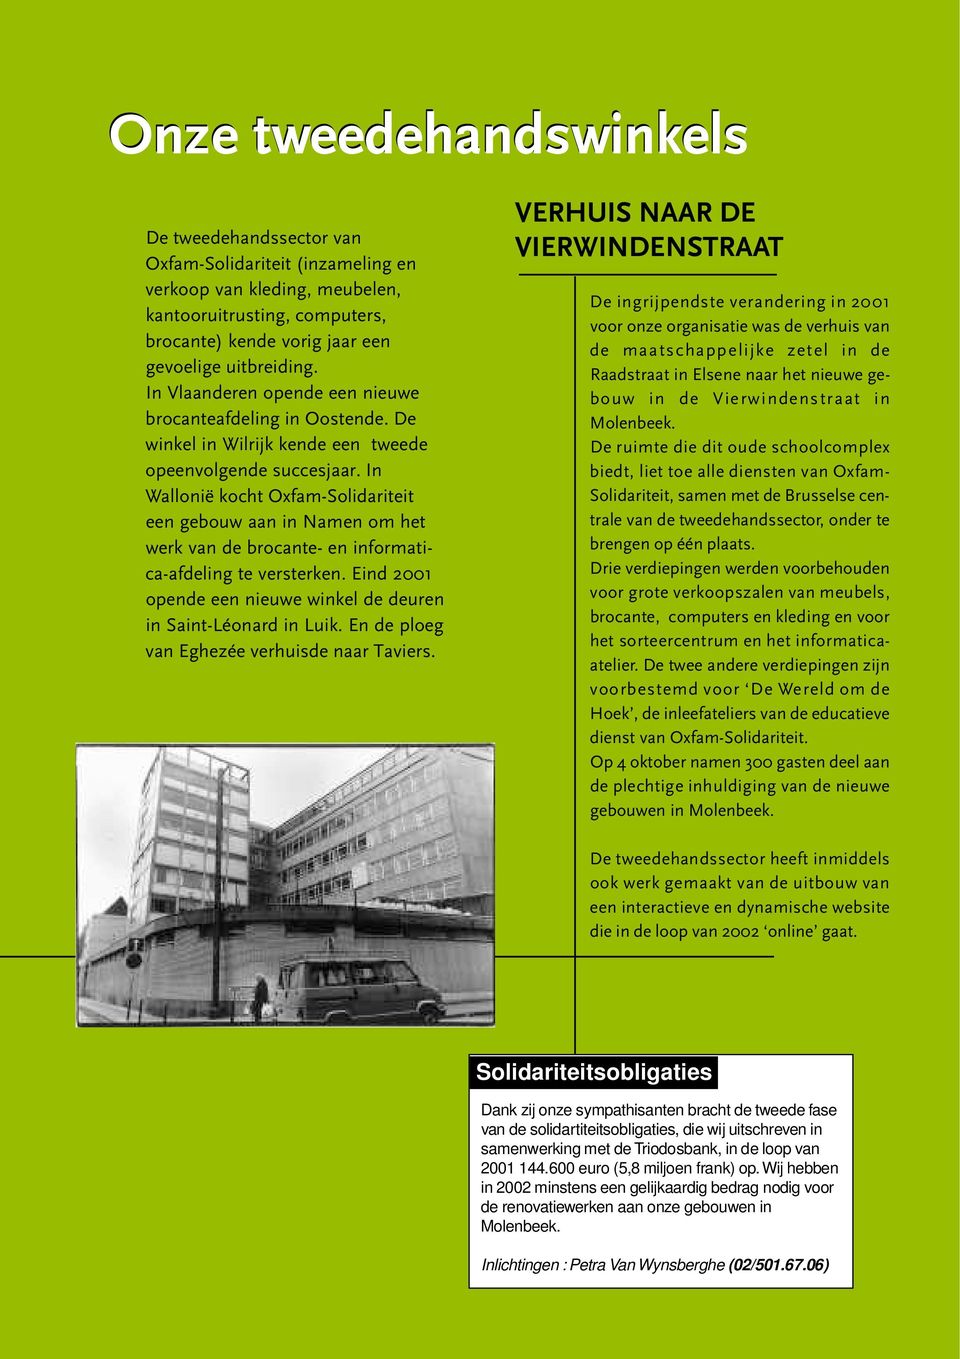 In Wallonië kocht Oxfam-Solidariteit een gebouw aan in Namen om het werk van de brocante- en informatica-afdeling te versterken. Eind 2001 opende een nieuwe winkel de deuren in Saint-Léonard in Luik.